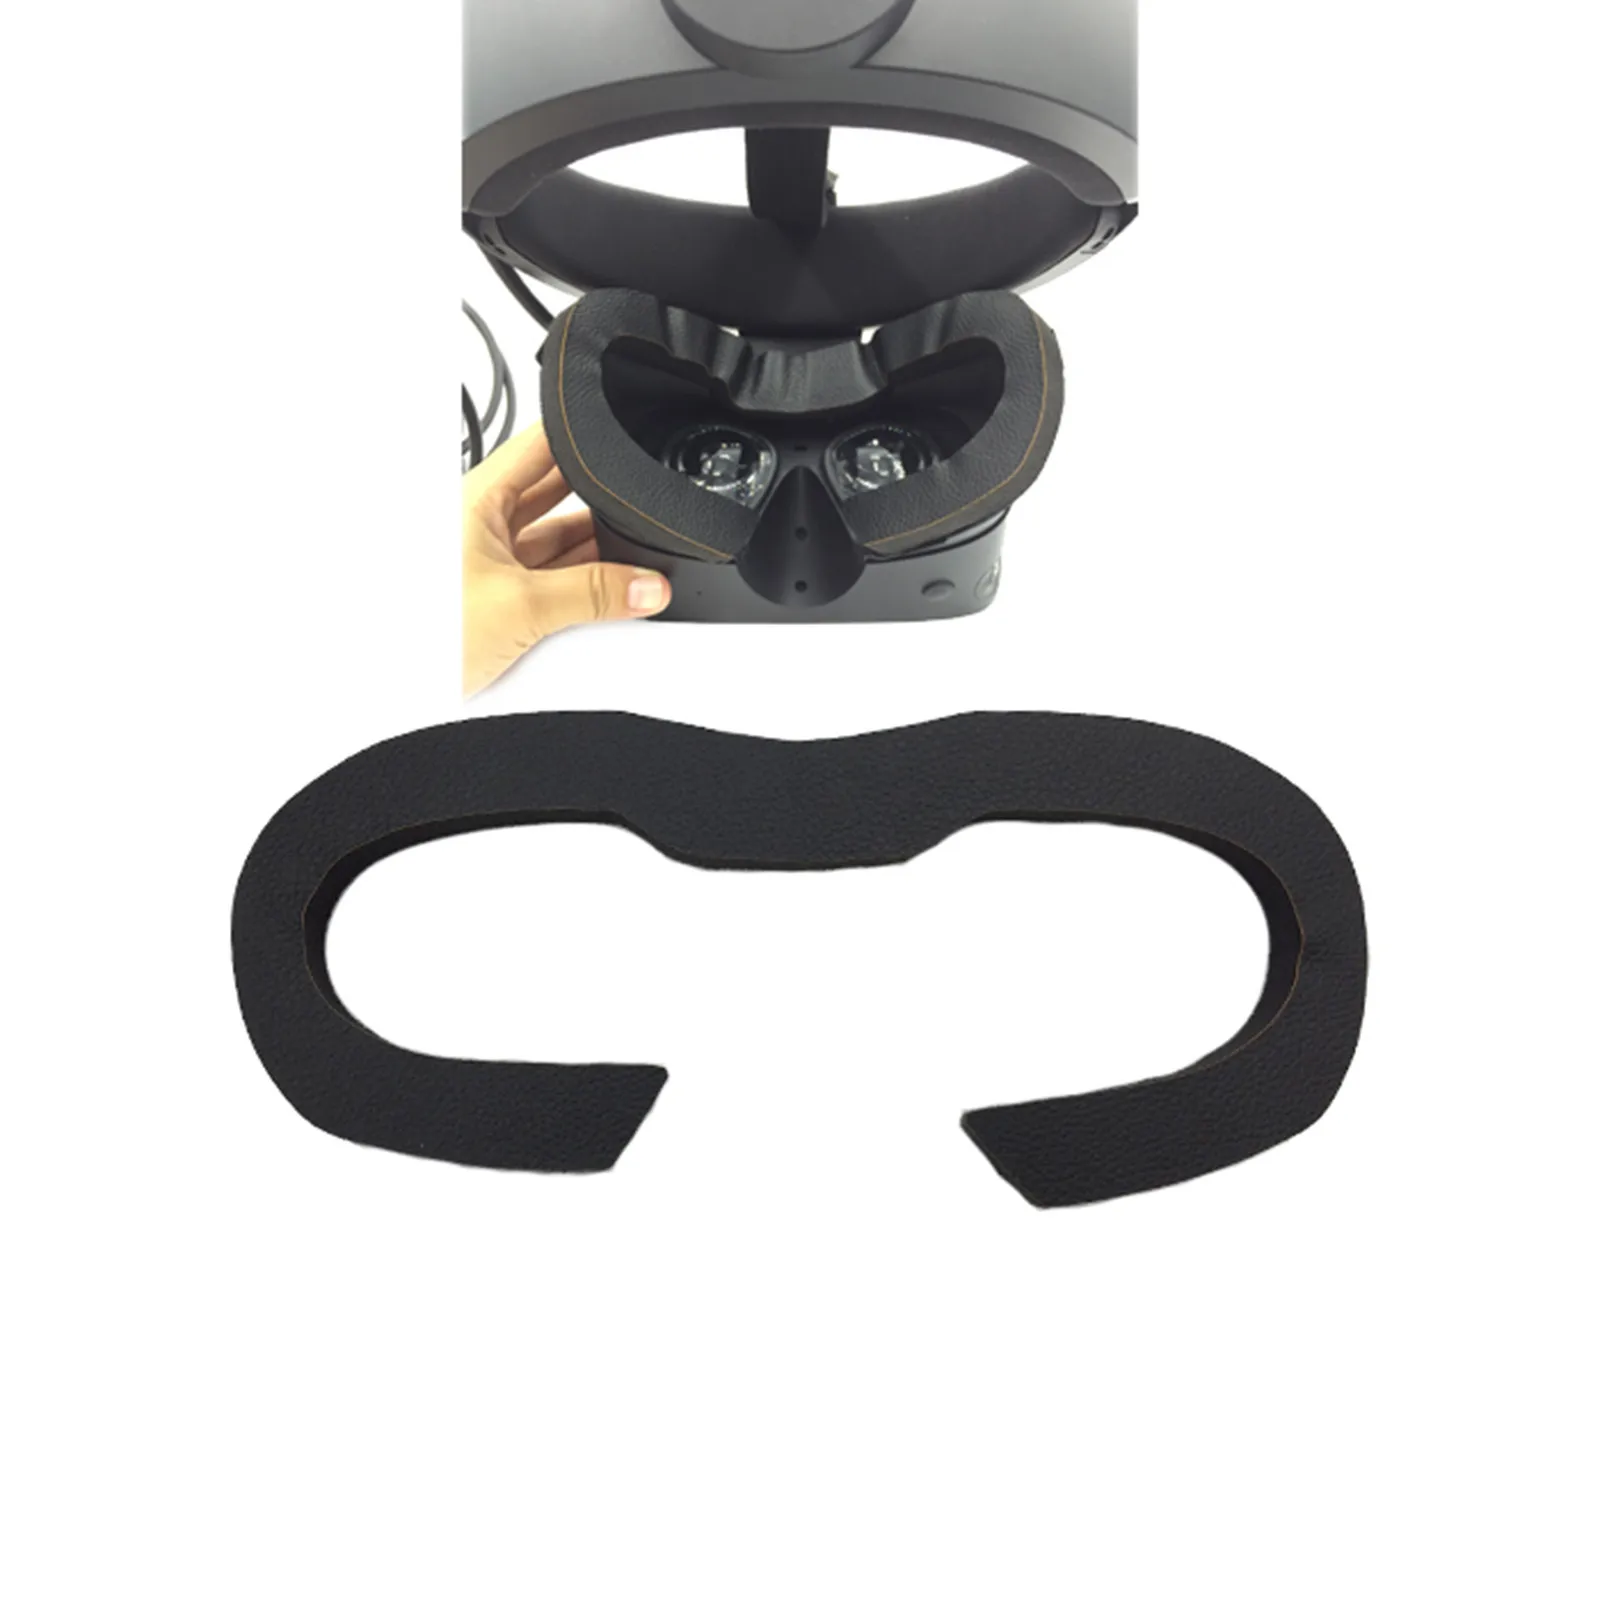 

1 шт. одноразовые с новой уникальной технологией рассеивания дышащая Губка мат для Oculus Rift S очки виртуальной реальности VR аксессуары для гар...